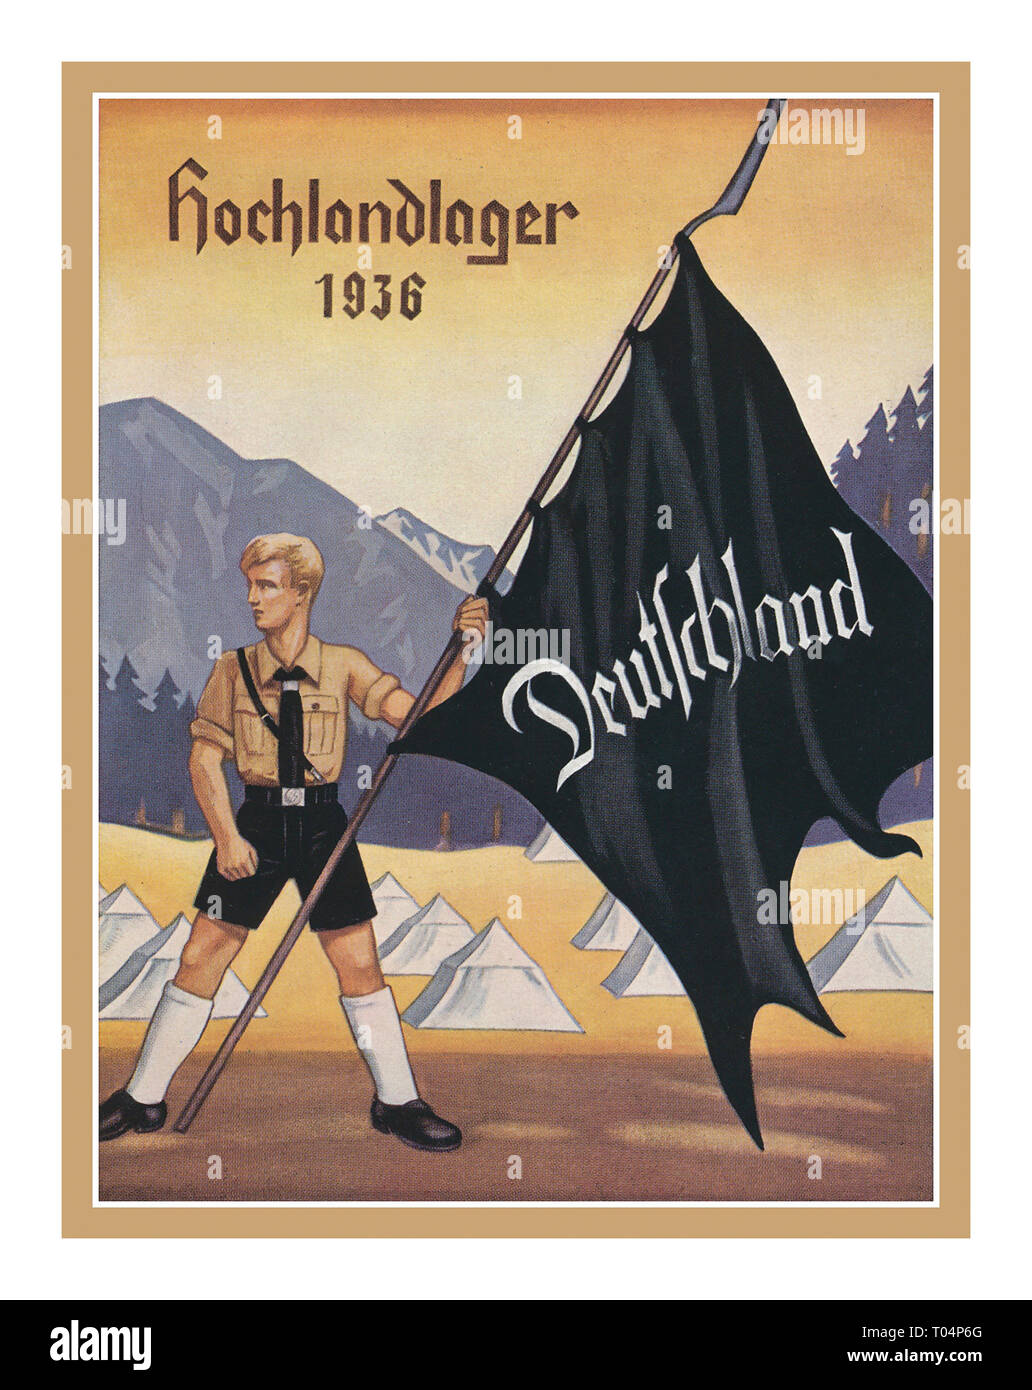 Ansichtskarten: Propaganda: 1936, 'Hochlandlager 1936', farbige Propagandakarte, gelaufen mit Text. 1936, 'Hochlandlager 1936', farbige Propagandakarte, gelaufen mit Text. Stock Photo